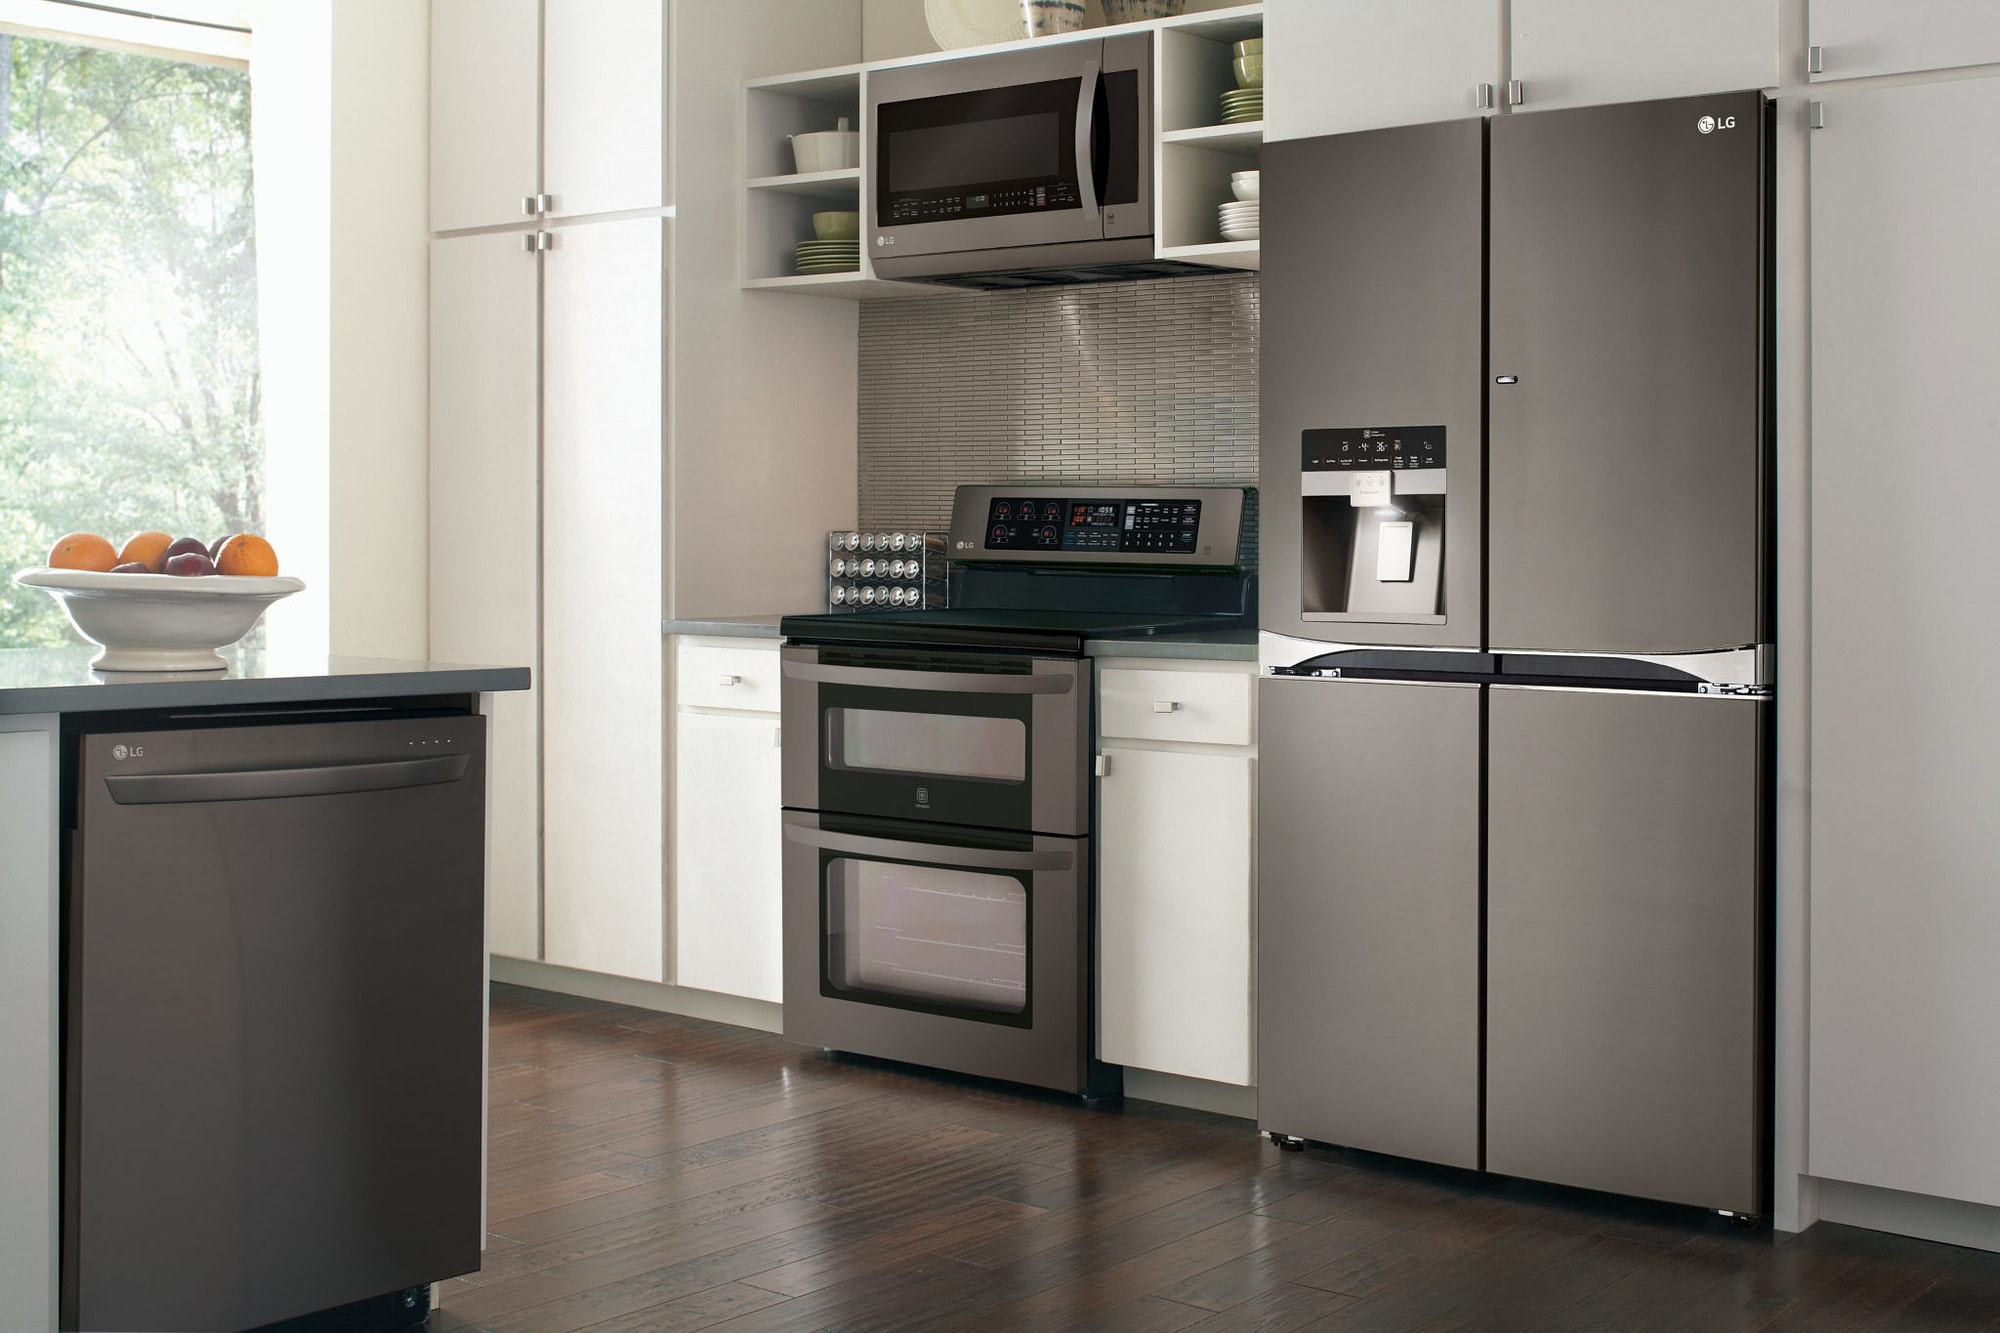 Бытовая техника цвета. Холодильник на кухне. Кухня с техникой LG. LG Appliances. Kitchen Design Smart Appliances.